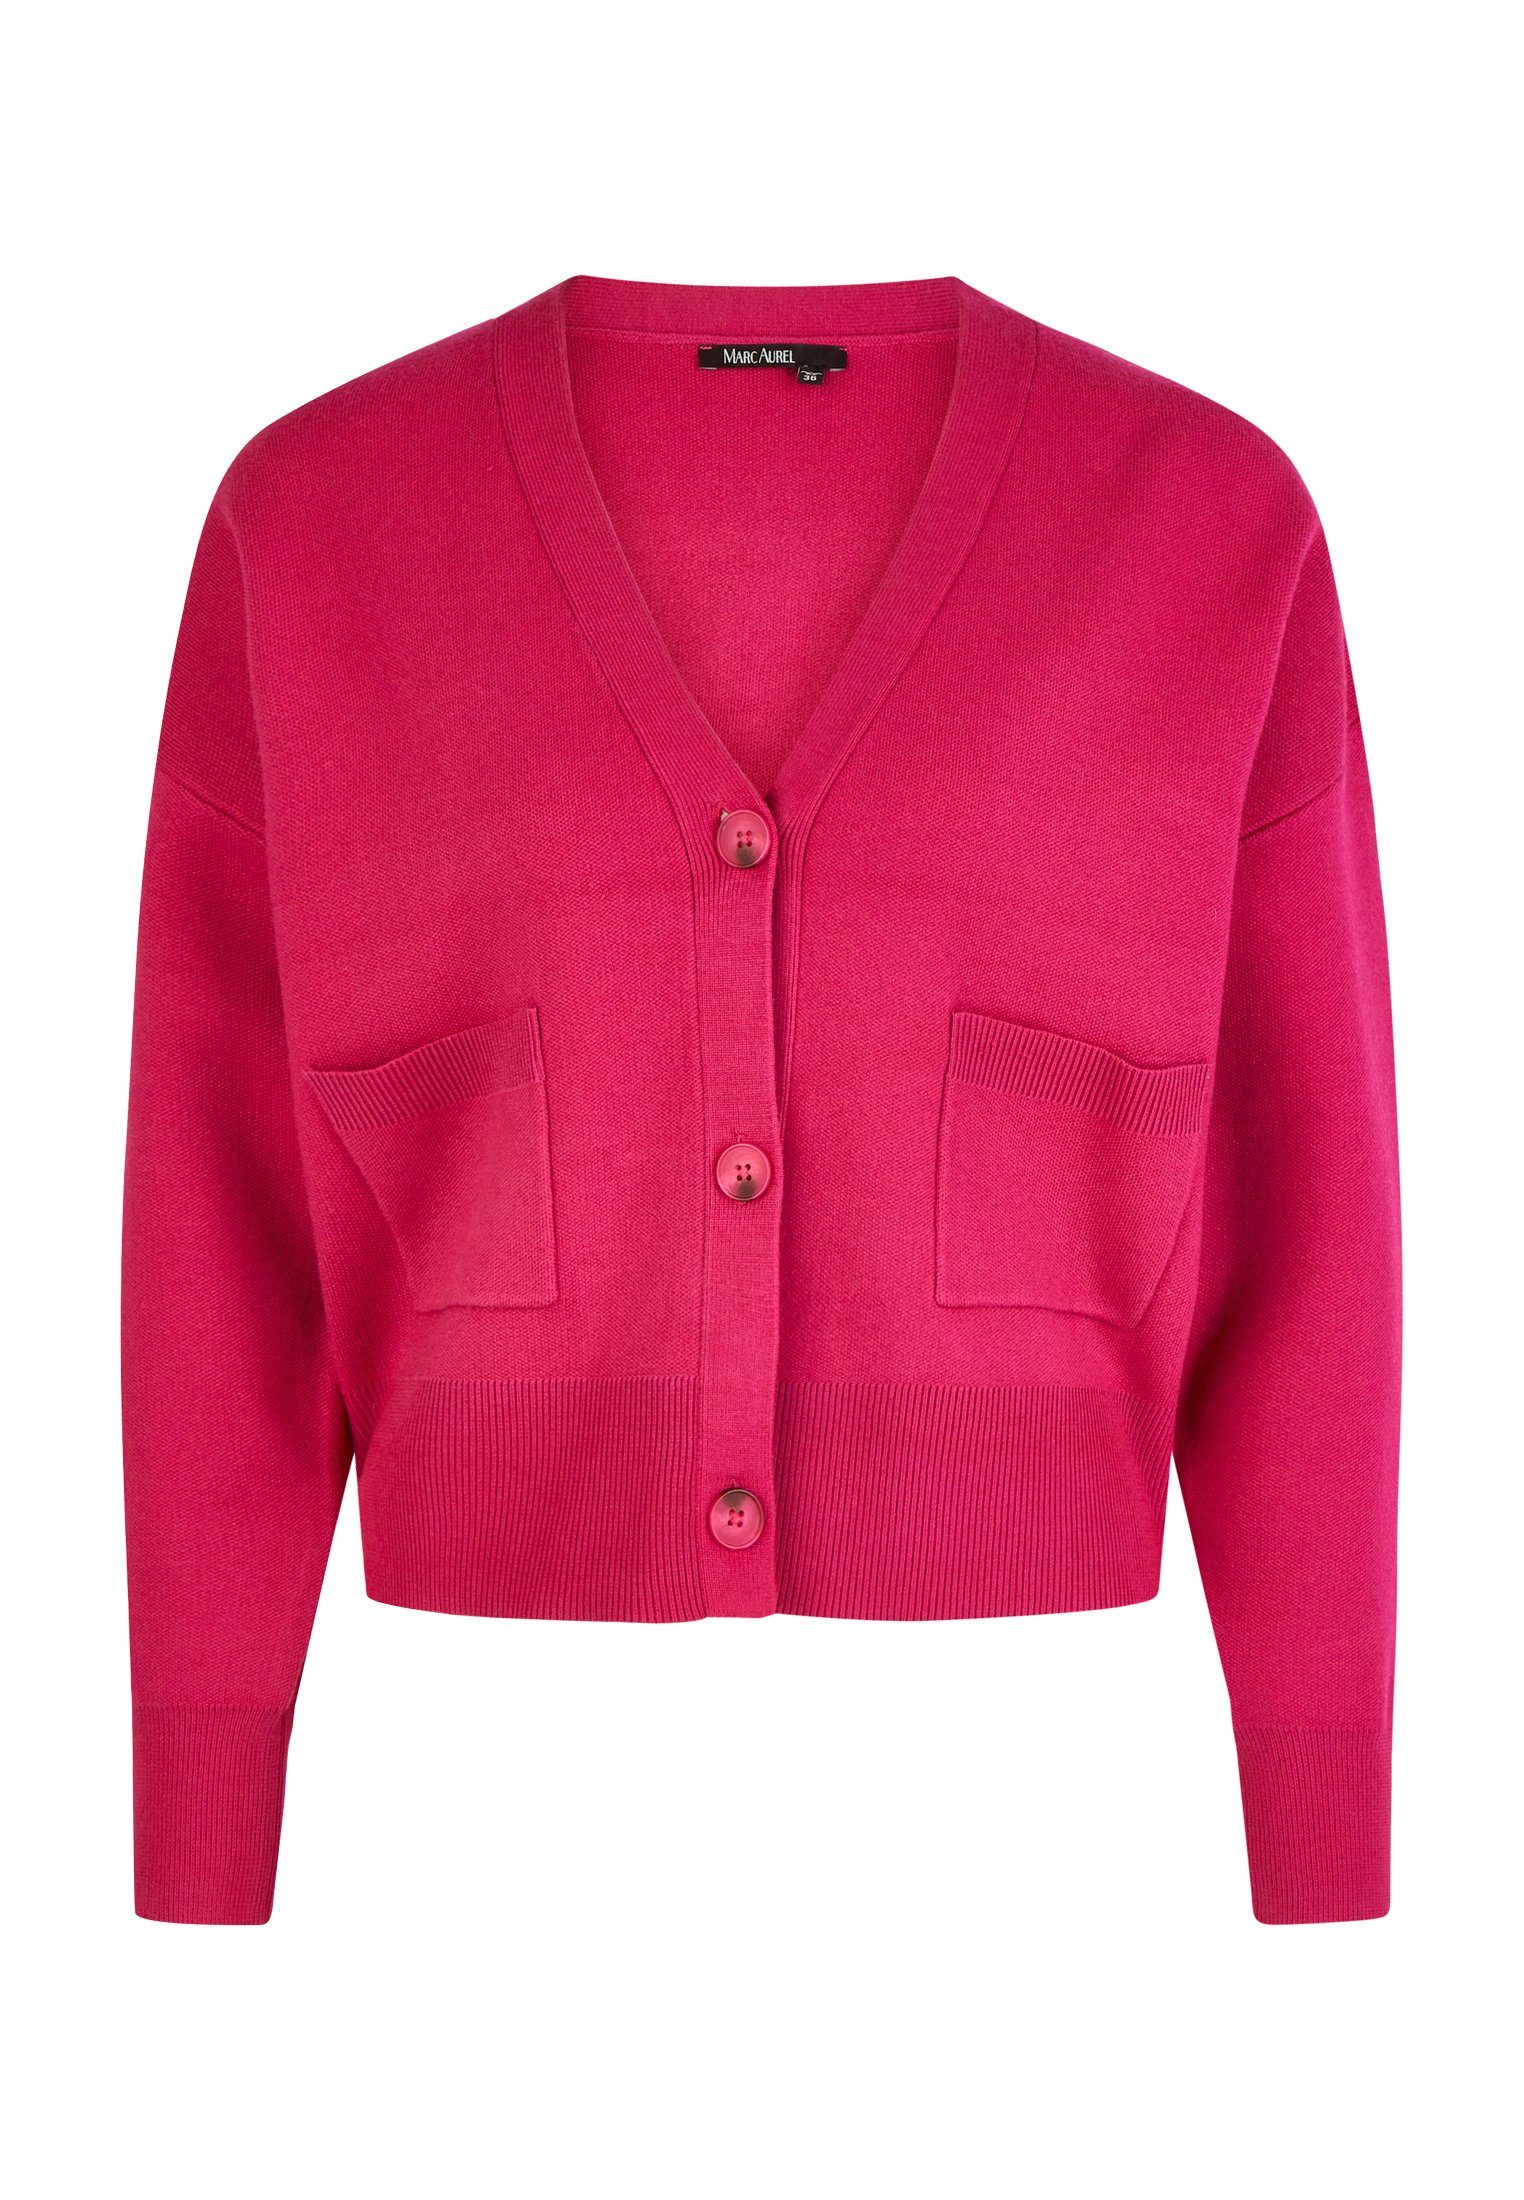 MARC AUREL Cardigan mit Taschen pink hot